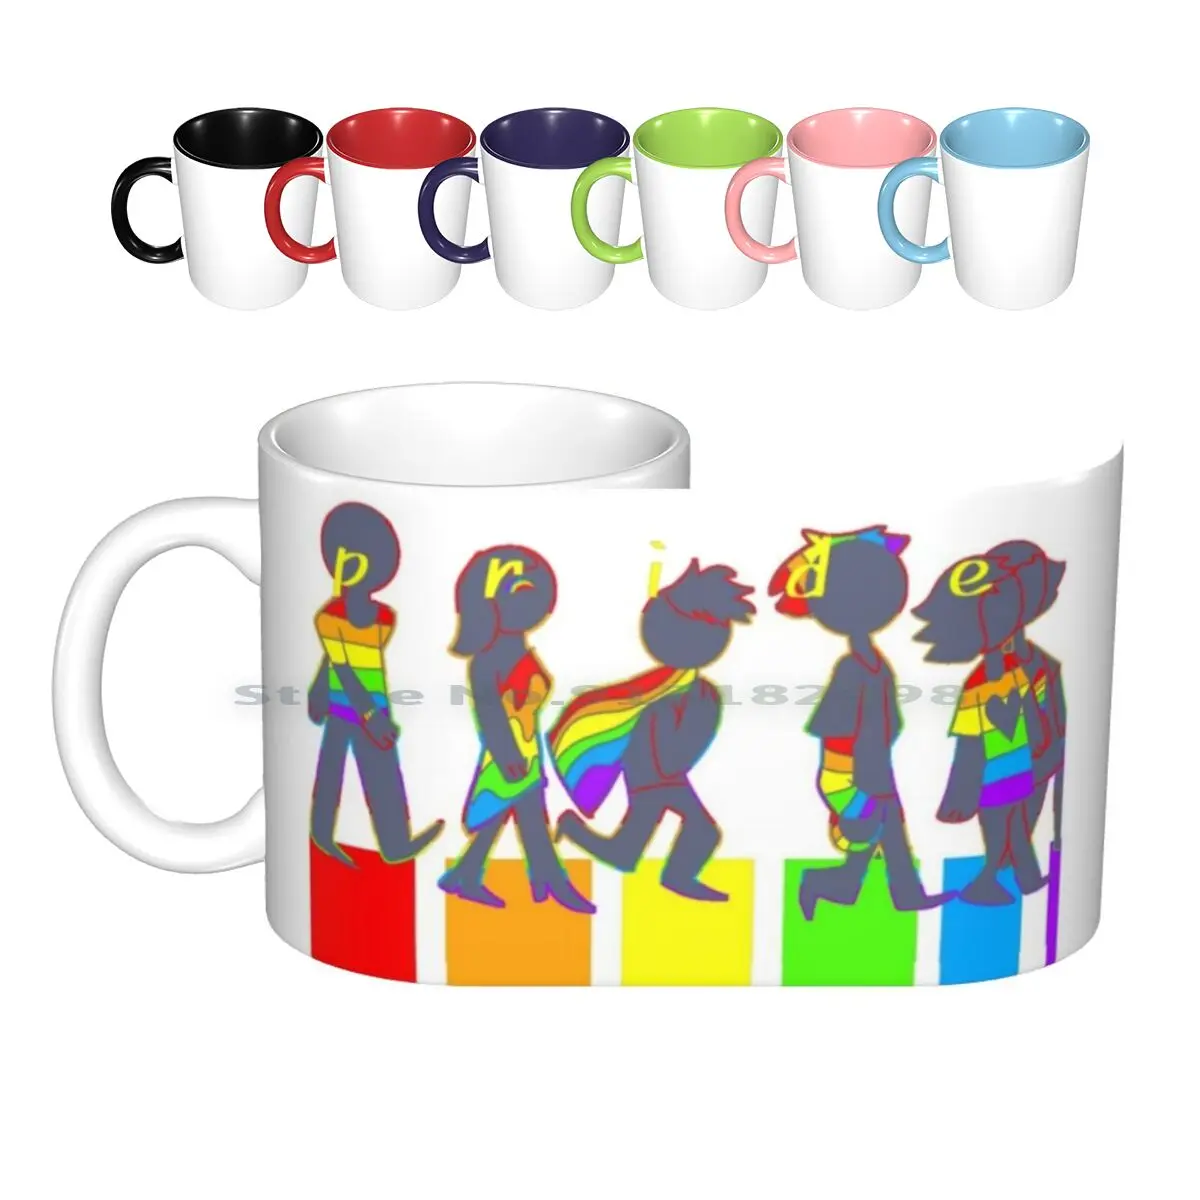 Caneca de cerâmica do orgulho lgbt tq, caneca para café, leite, chá, orgulho lgbtq lésbico, gay, bissual, não duplo, tendência criativa, vintage